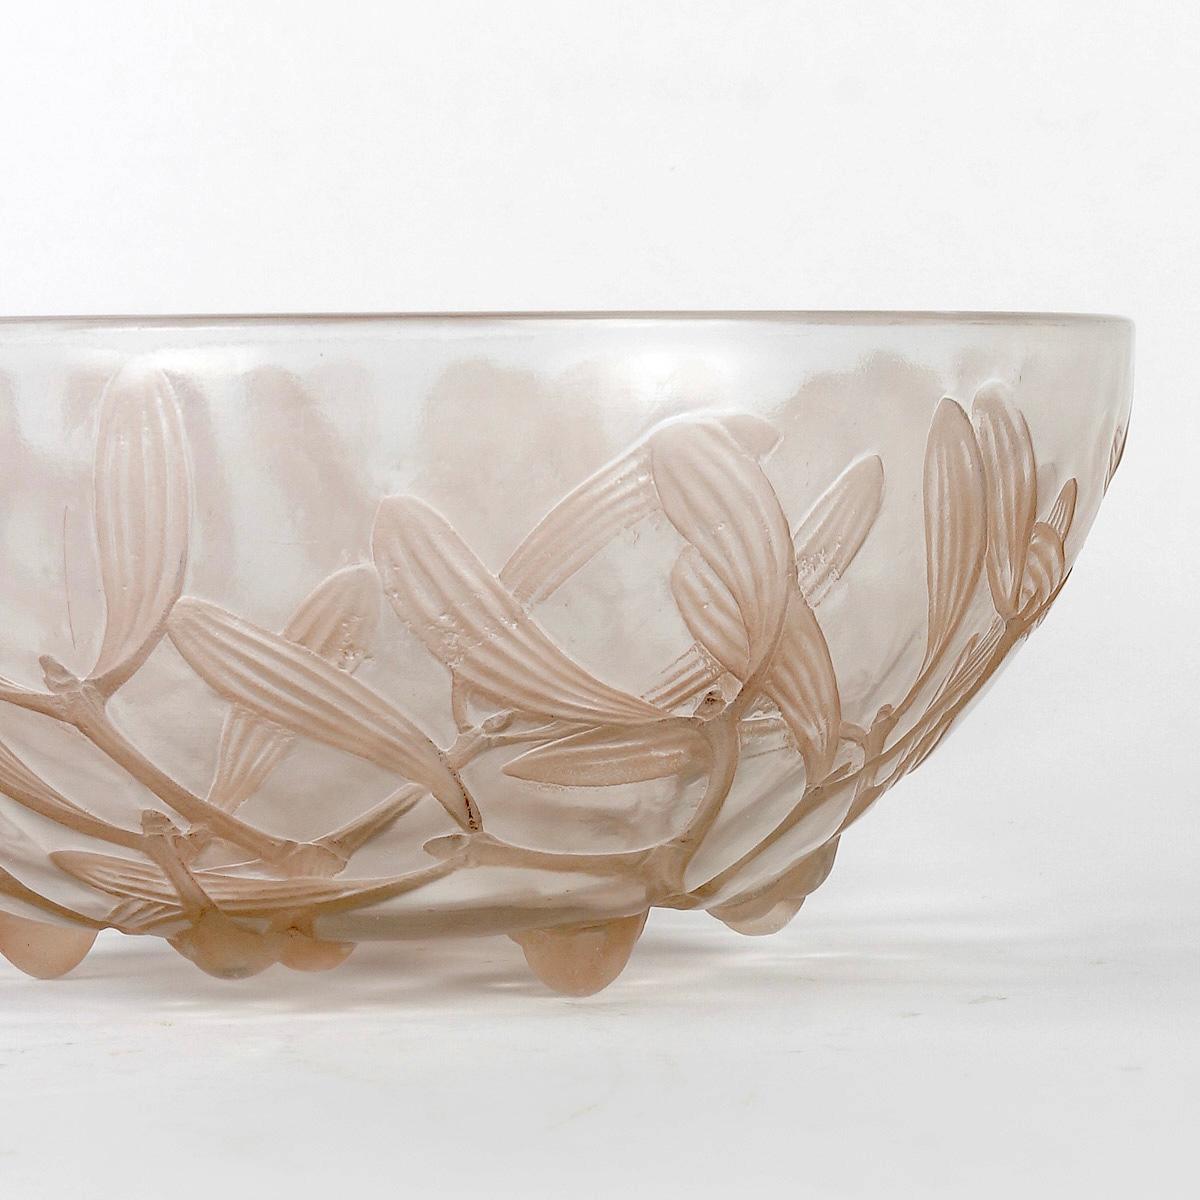 Art Deco 1921 René Lalique -Bowl Gui Mistletoe Glass with Sepia Patina For Sale